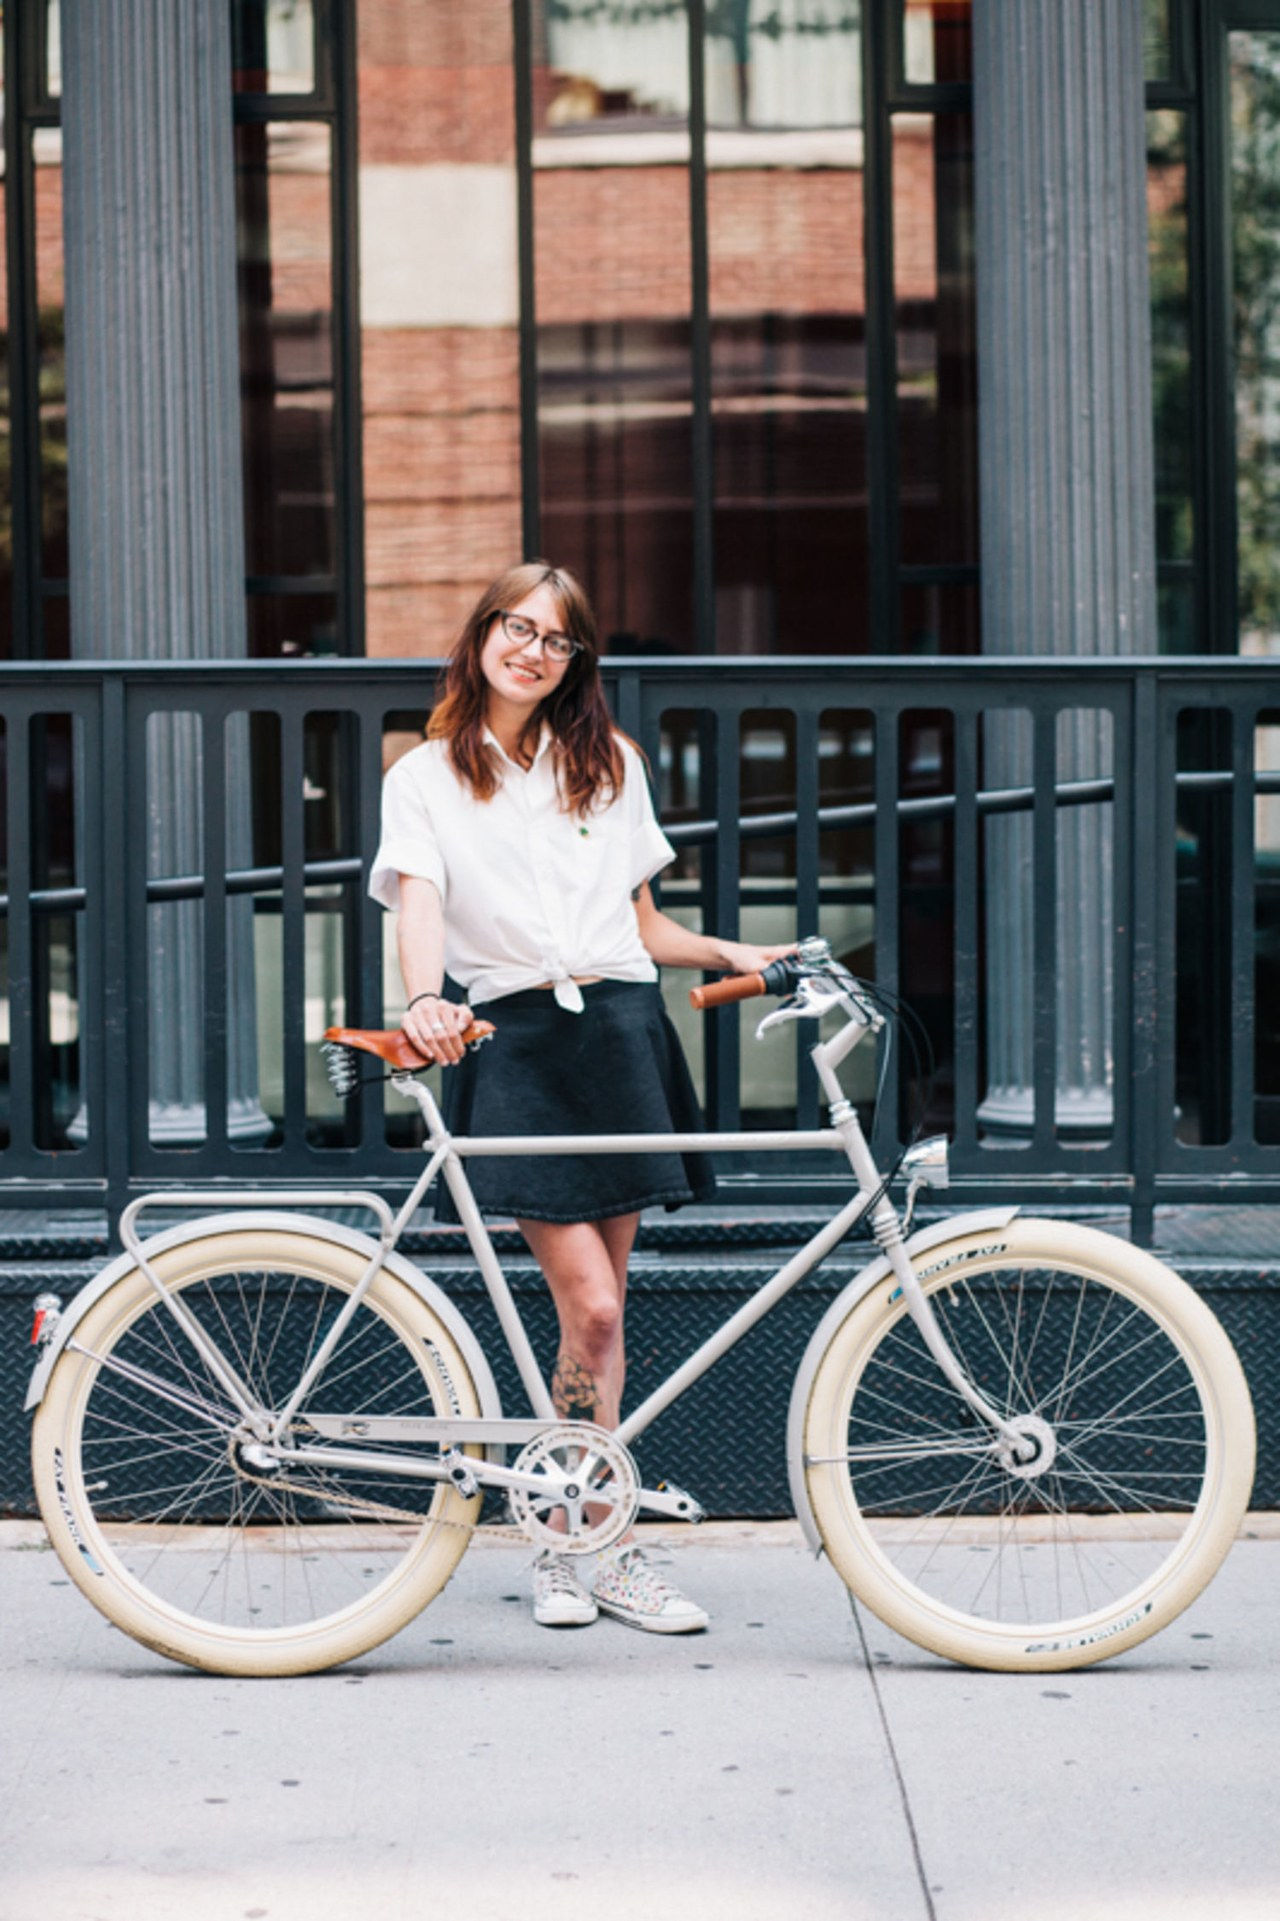 privilegiado mode girl on bike white shirt black skirt